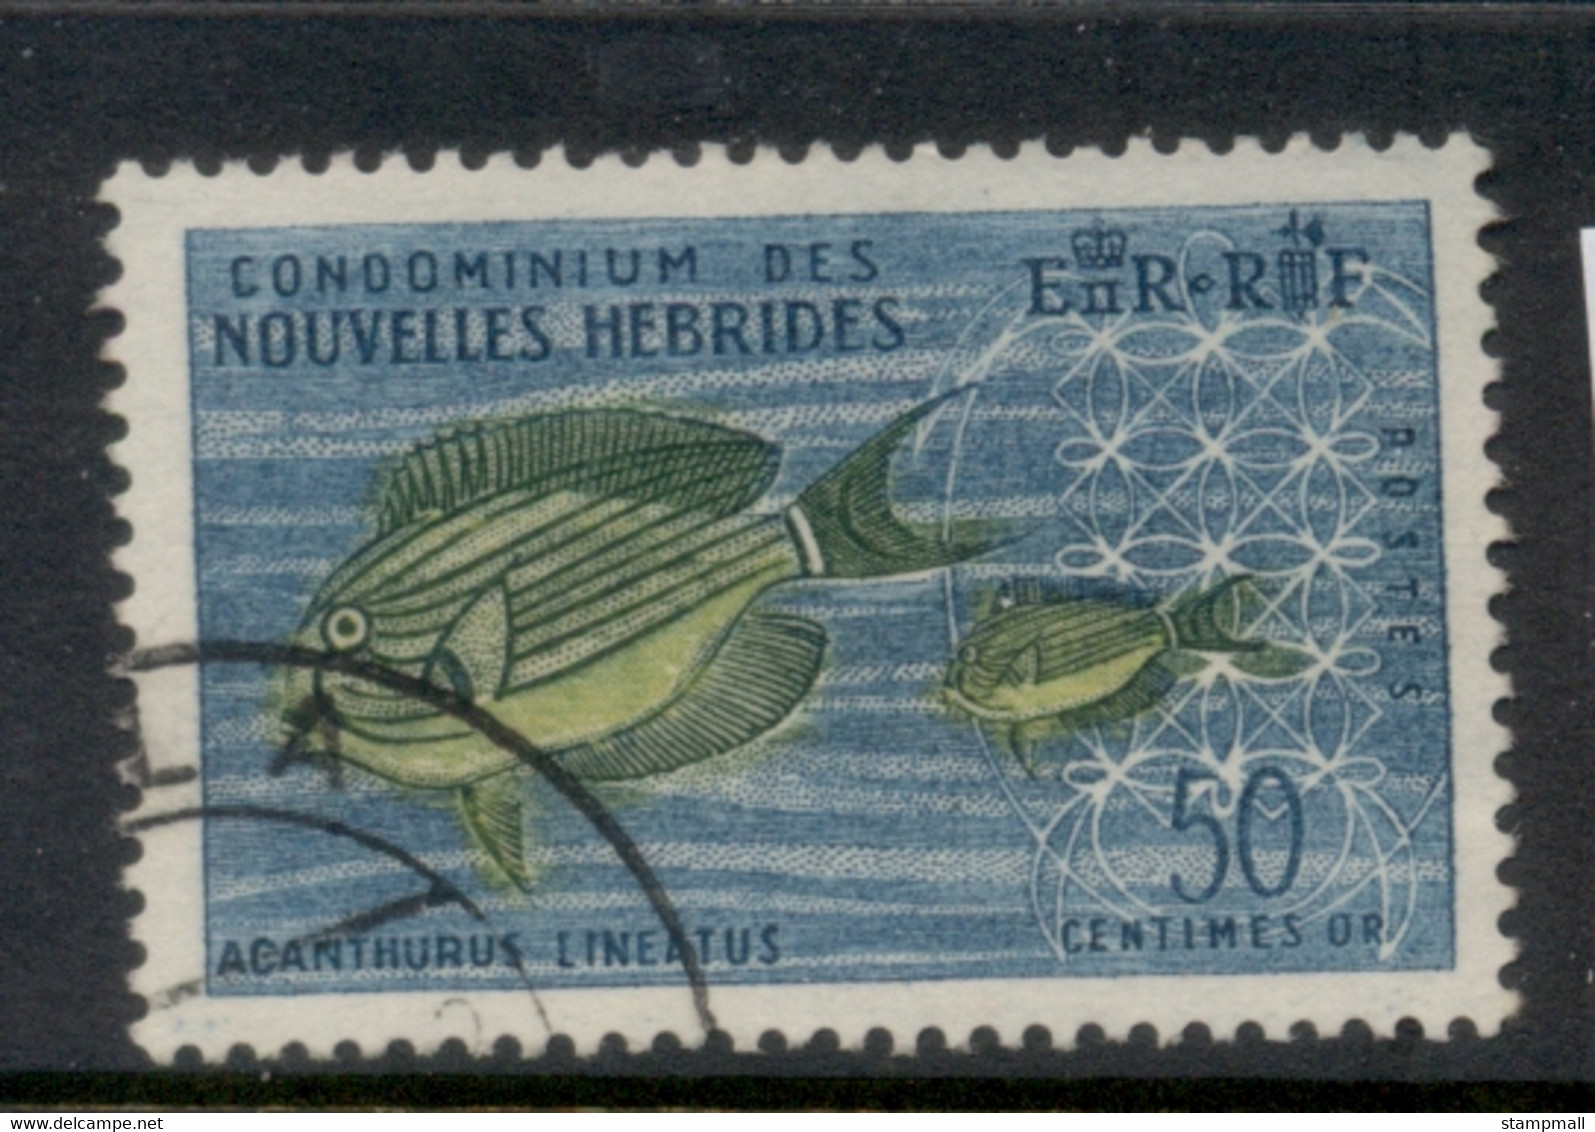 New Hebrides (Fr) 1963-67 Pictorials 50c FU - Oblitérés